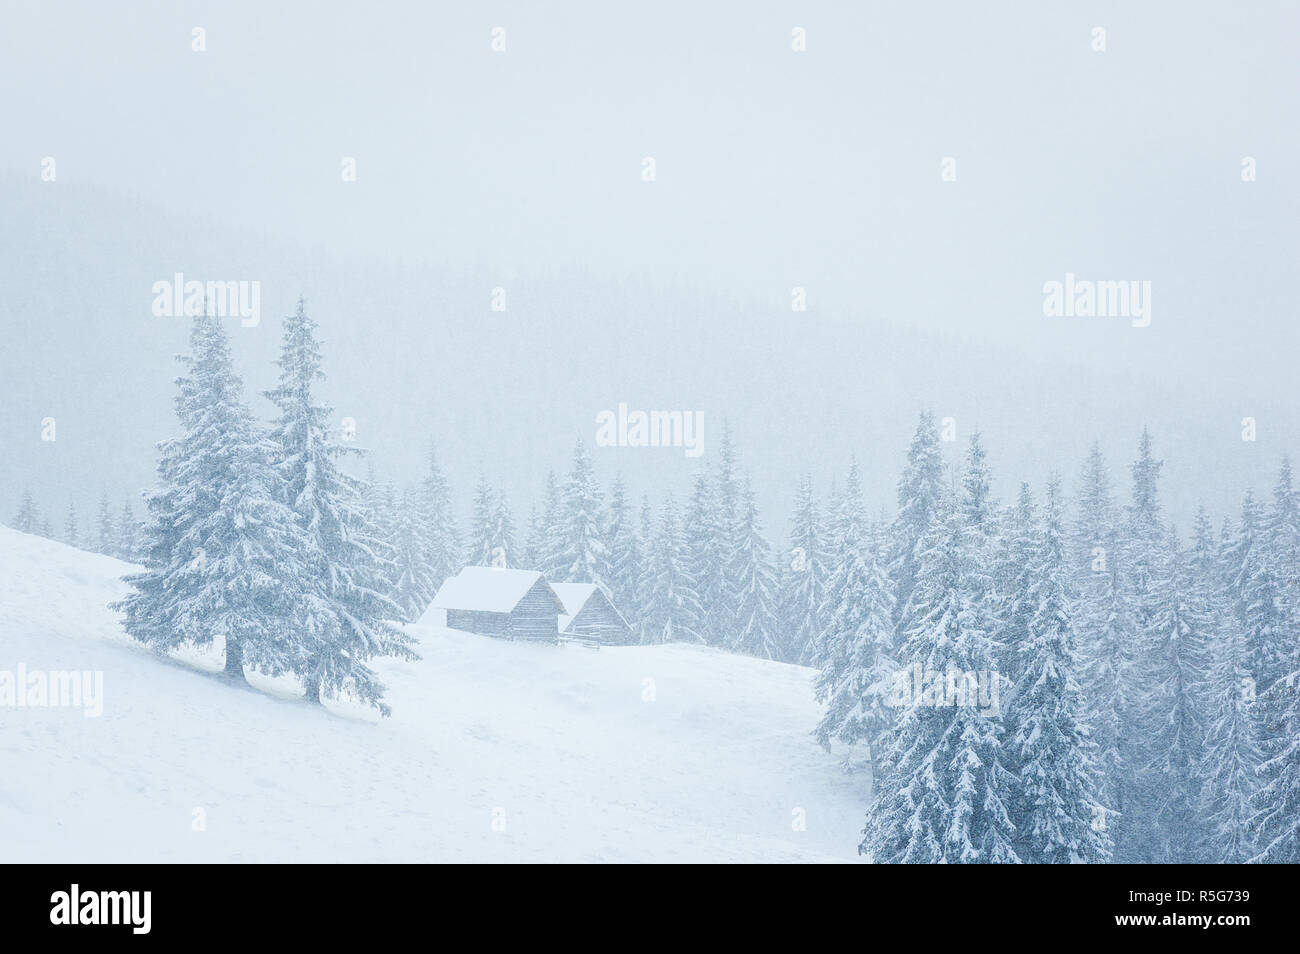 Paysage d'hiver de rêve avec une maison de montagne dans la neige. Brouillard dans la forêt d'épinettes. Arbres couverts de givre Banque D'Images